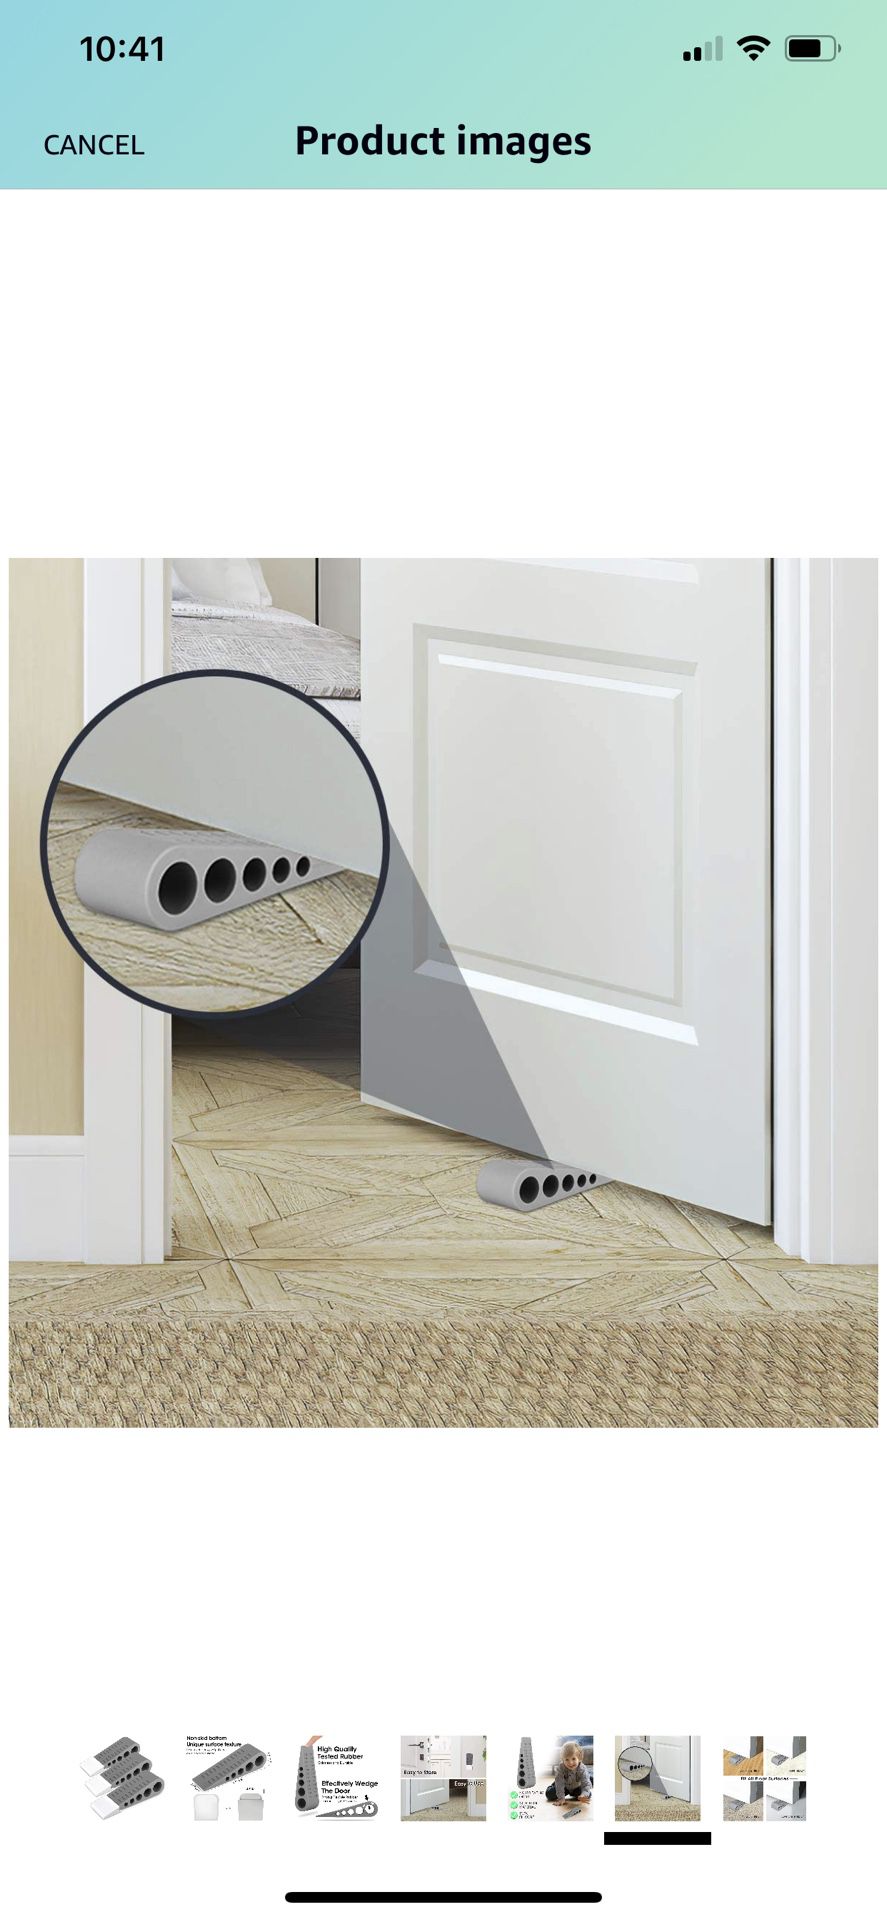 Door Stopper Rubber Door Stop Wedge Security Door Stops with Door Holder Rubber Door Stoppers Works On All Floor Types and Carpet Heavy Duty Door Jam